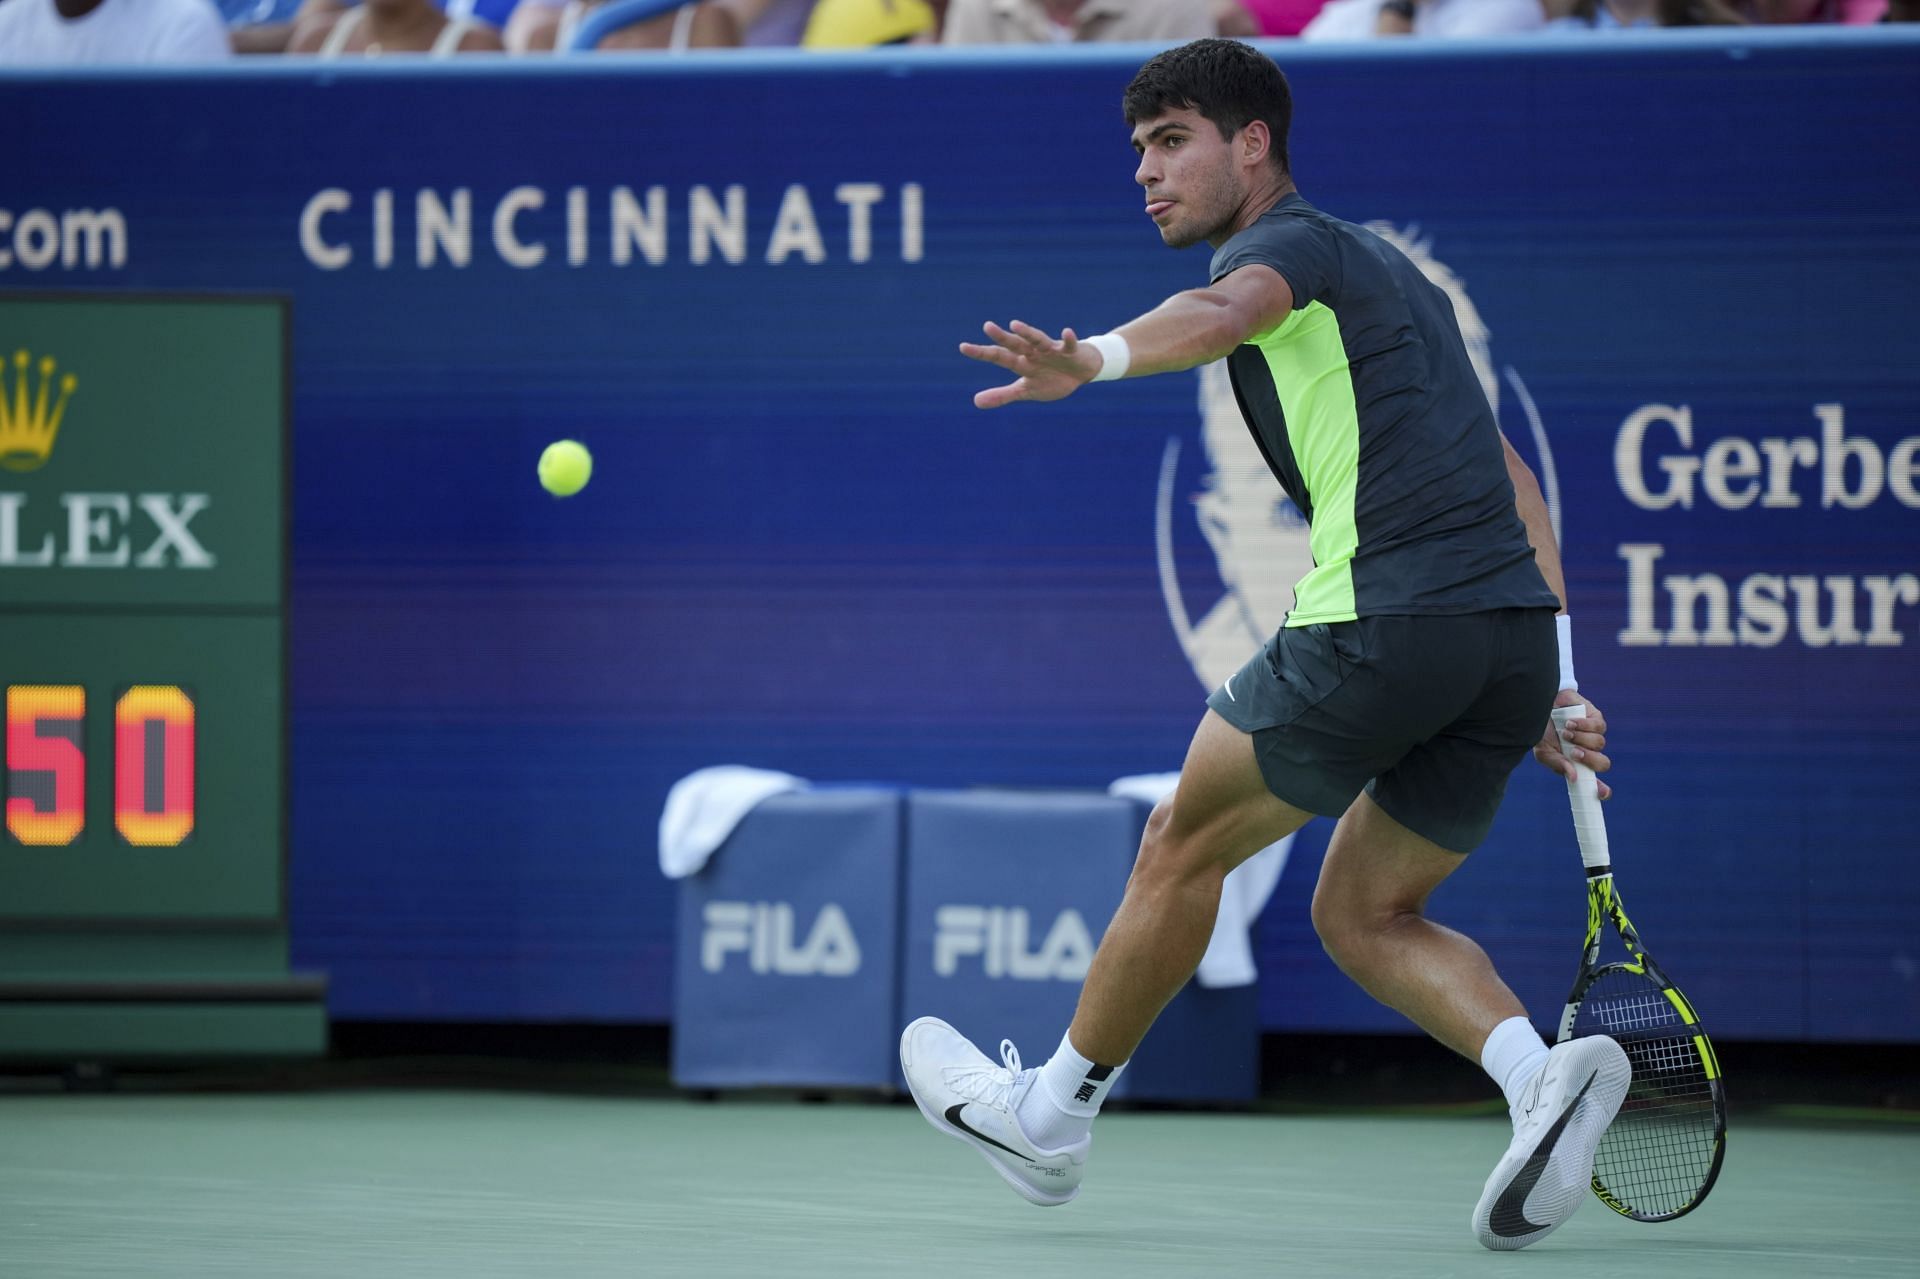 Cincinnati Tennis: Top seed in action